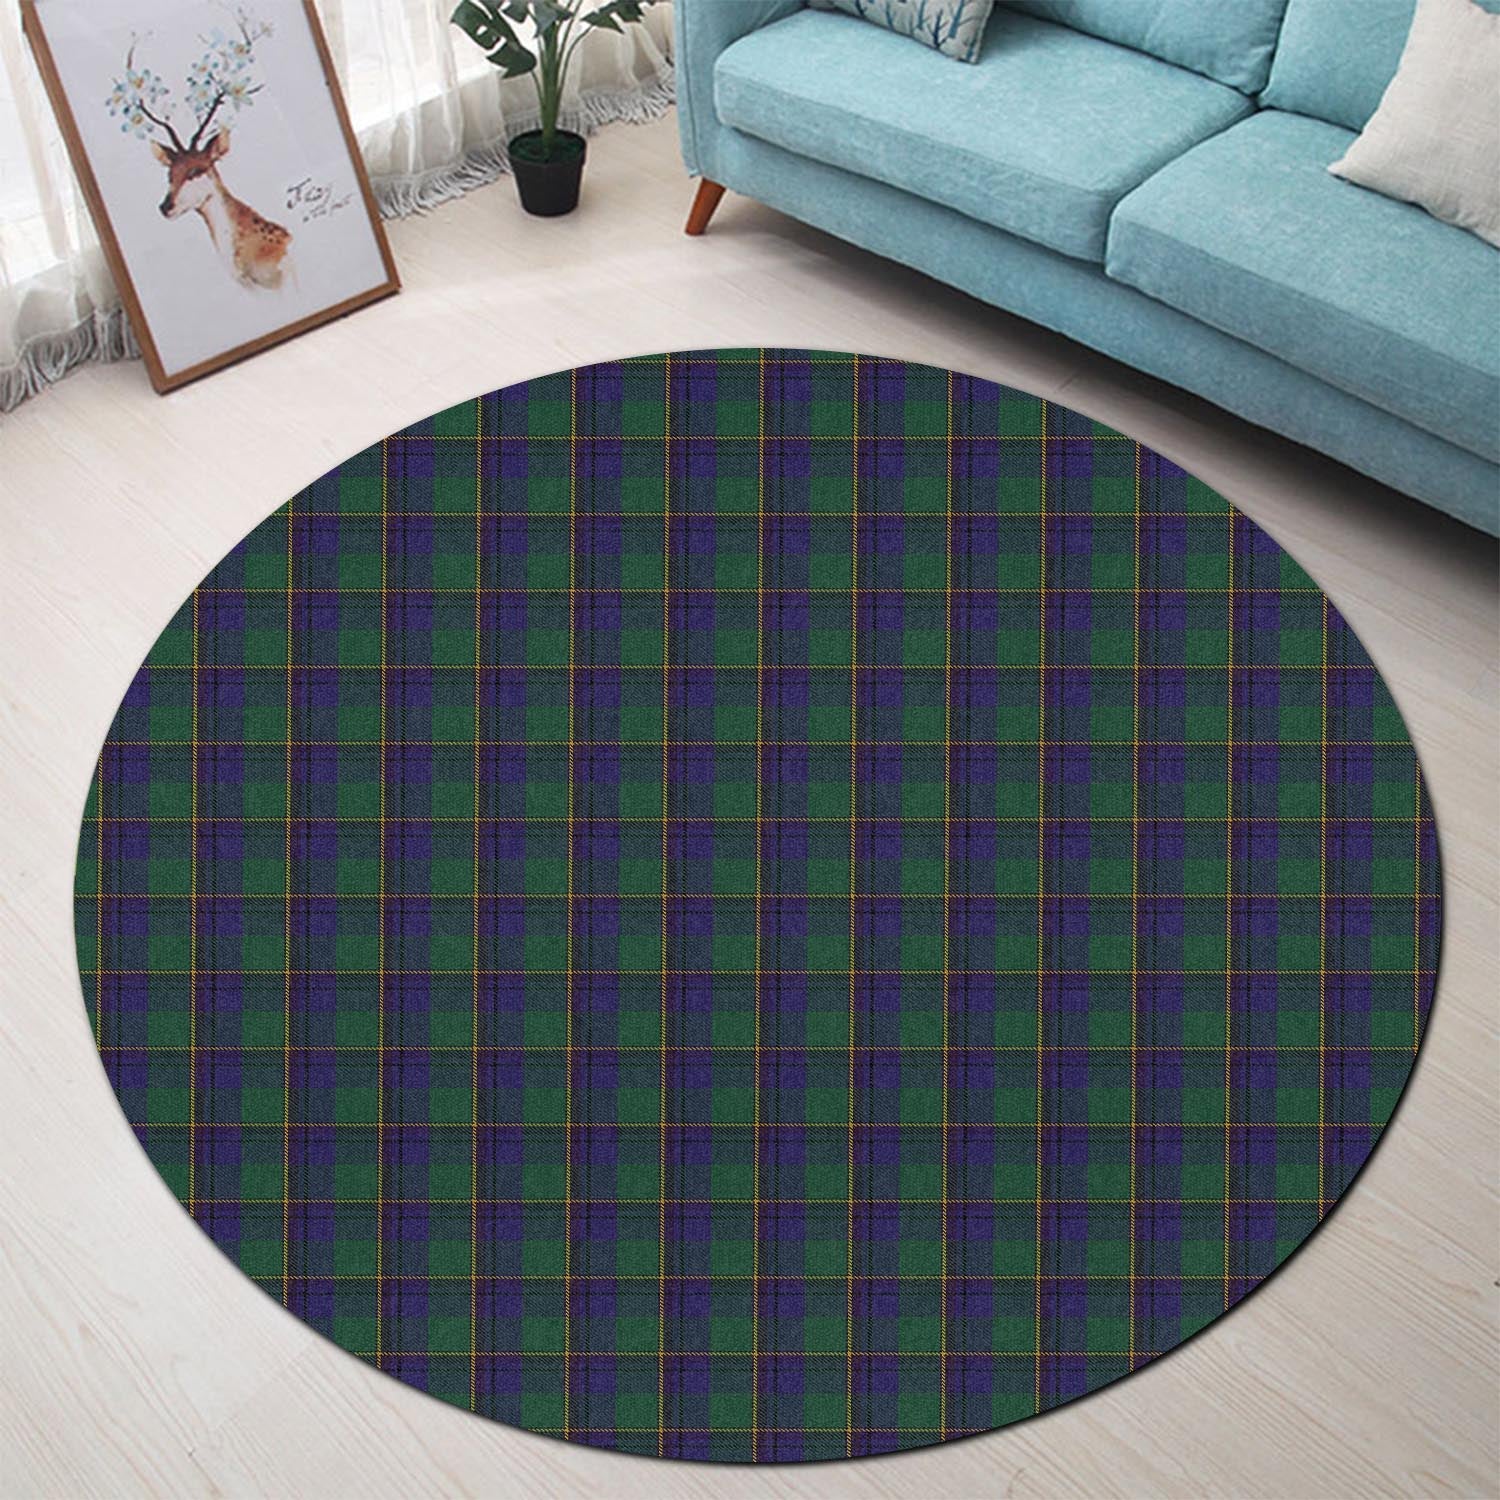 lowry-tartan-round-rug